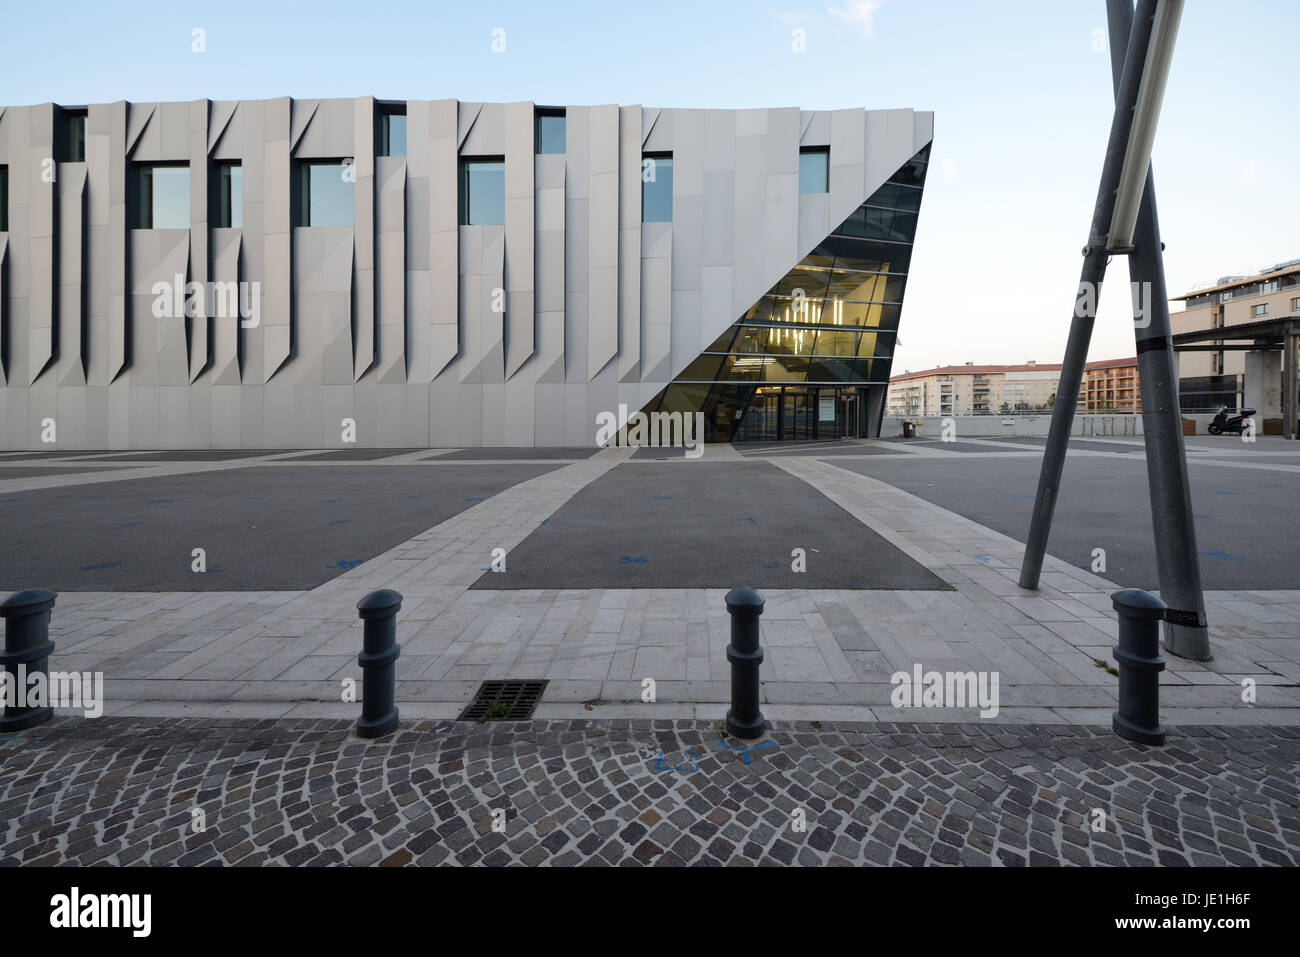 Conservatorio de música o el Conservatorio de Música de Darius Milhaud (comp 2013) diseñada por el arquitecto japonés Kengo Kuma Aix-en-Provence Francia Foto de stock